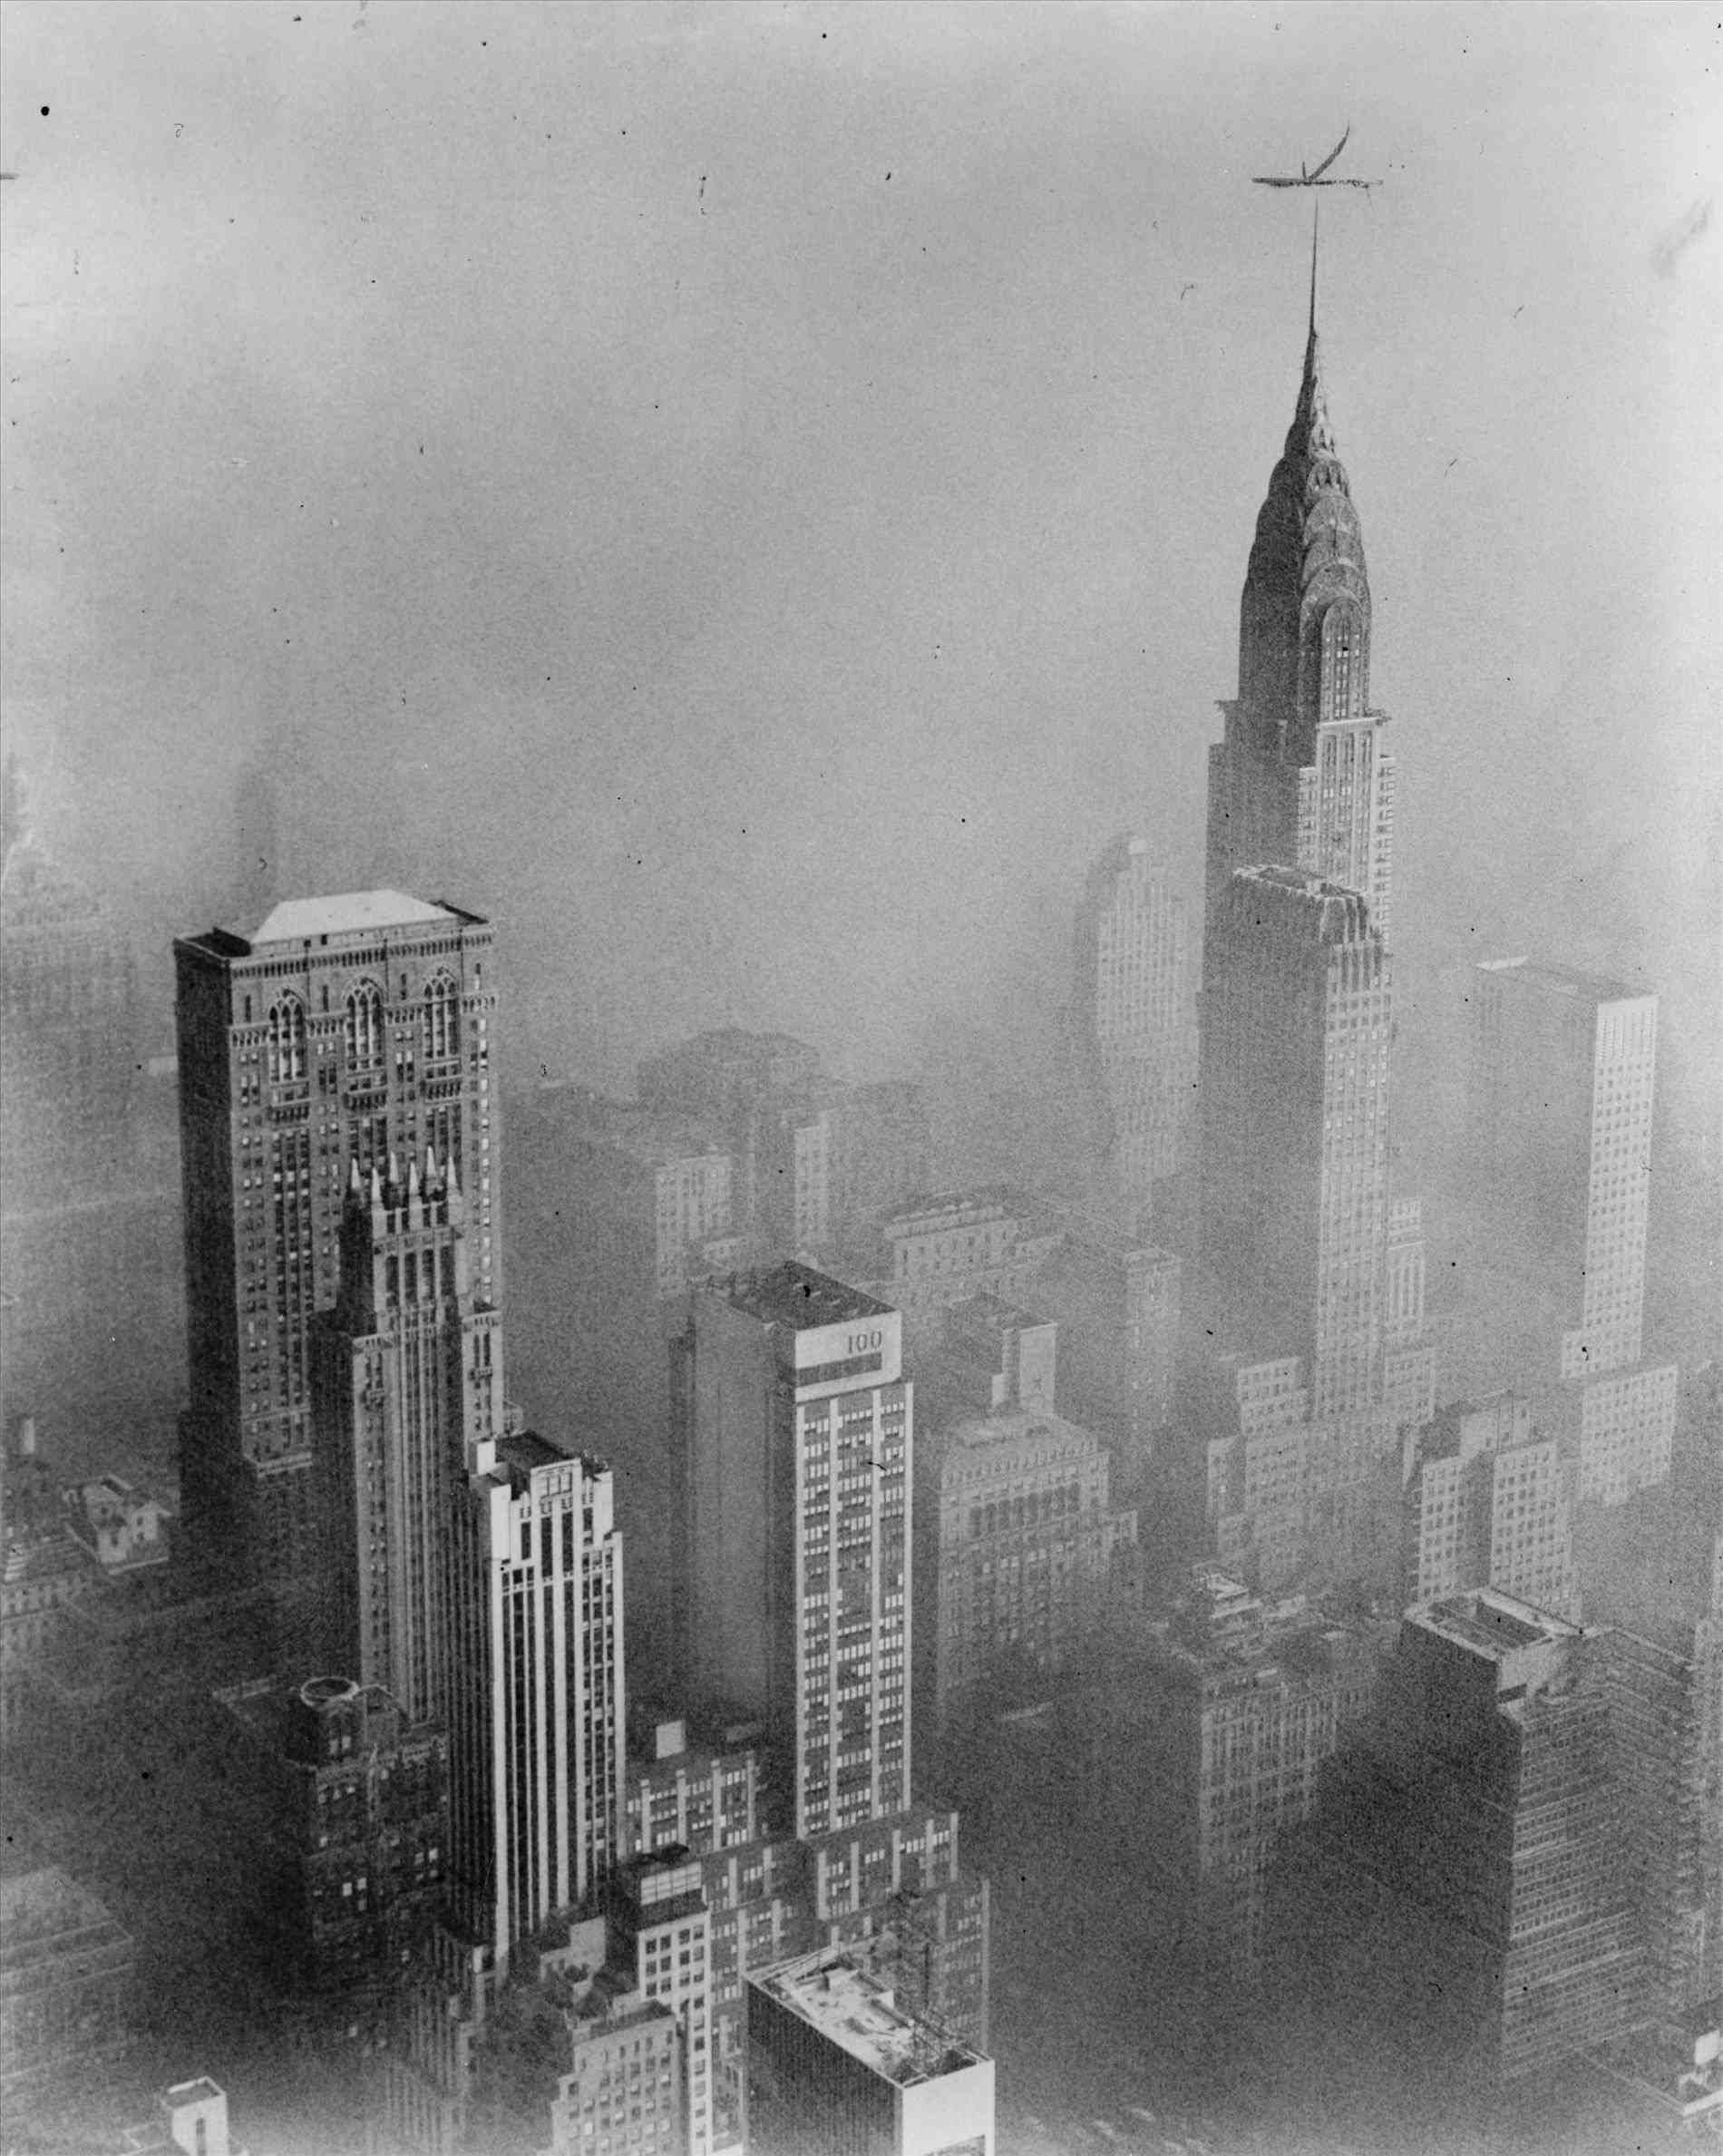 مبنى (كرايسلر) الواقع في مدينة (نيويورك) والضباب يلفّه ليبدو بمنظر غامض كأنه مشهد في فلم هوليوودي ساحر. سنة 1952